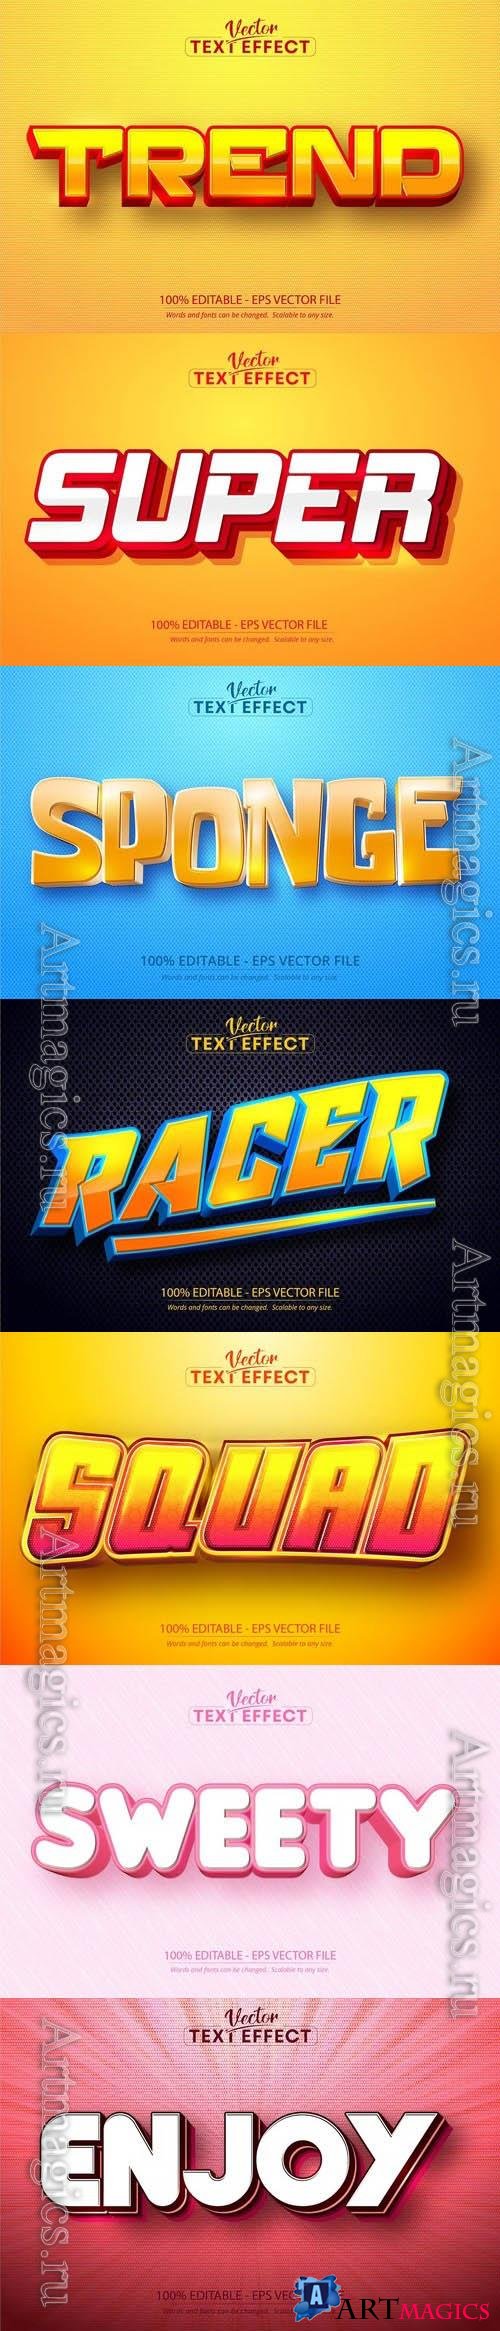 Vector 3d text editable, text effect font vol 131